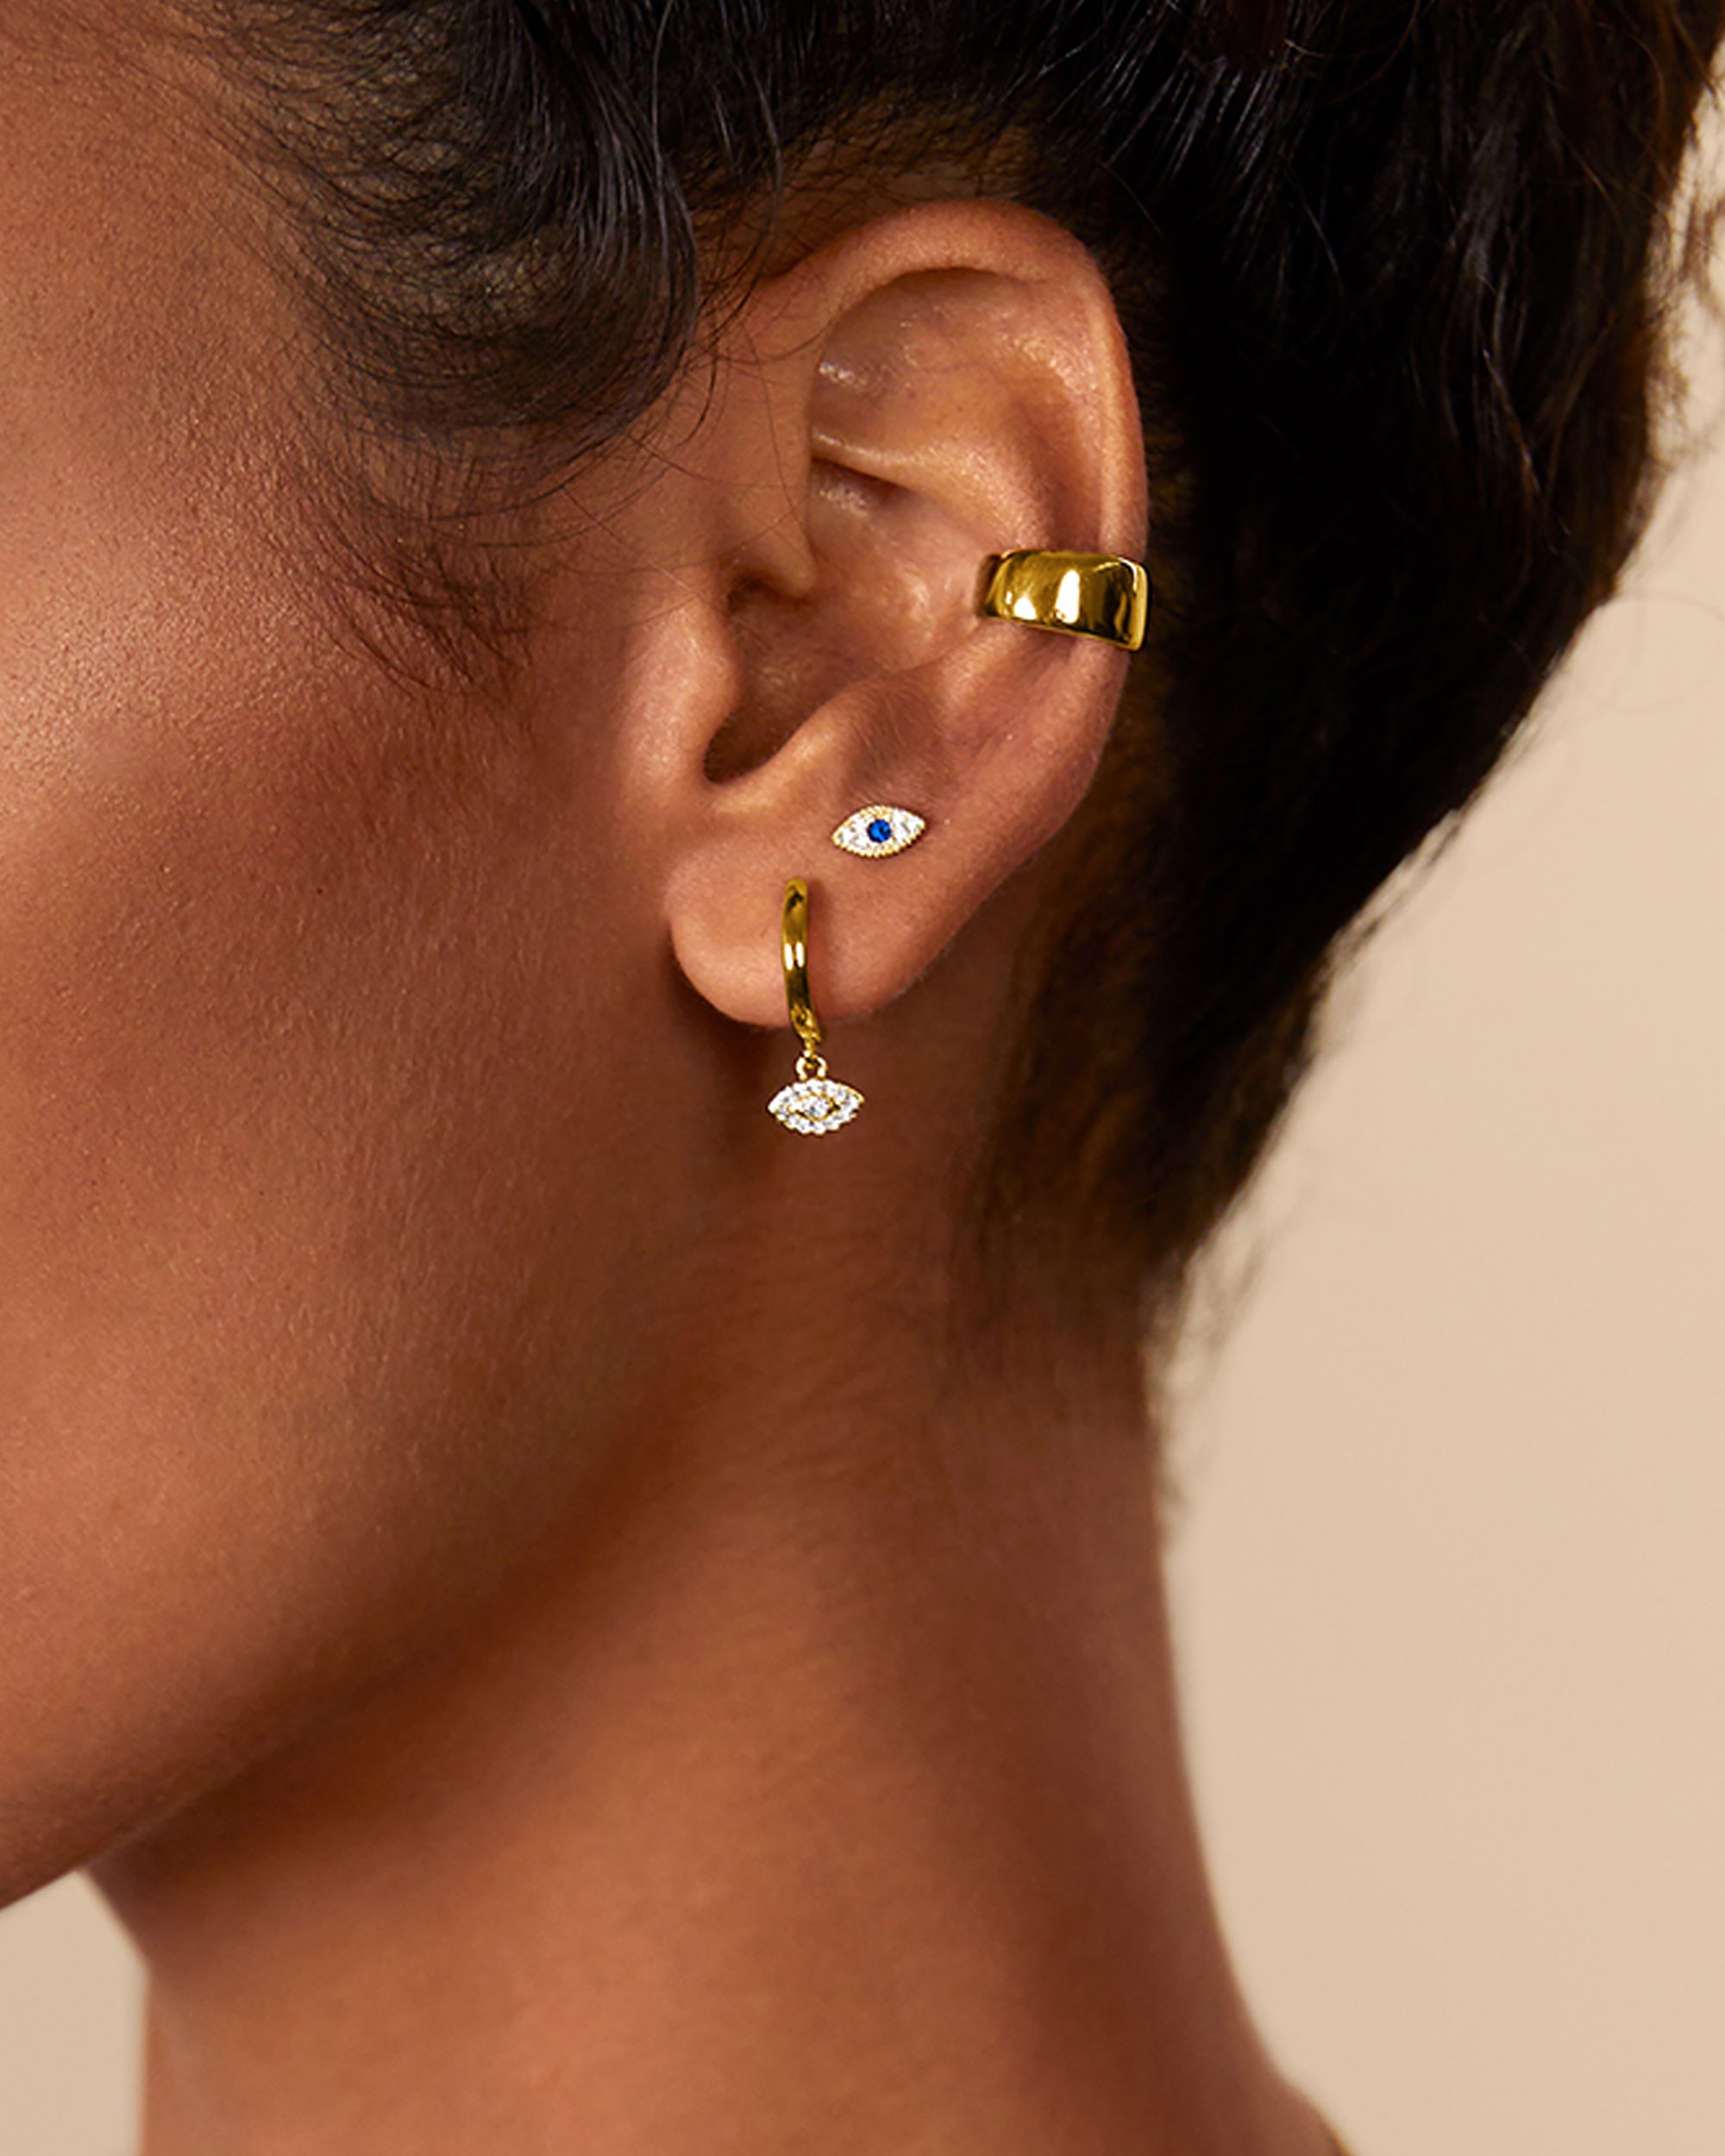 Tear Screw Back Gold Stud Earrings for Women by PAVOI